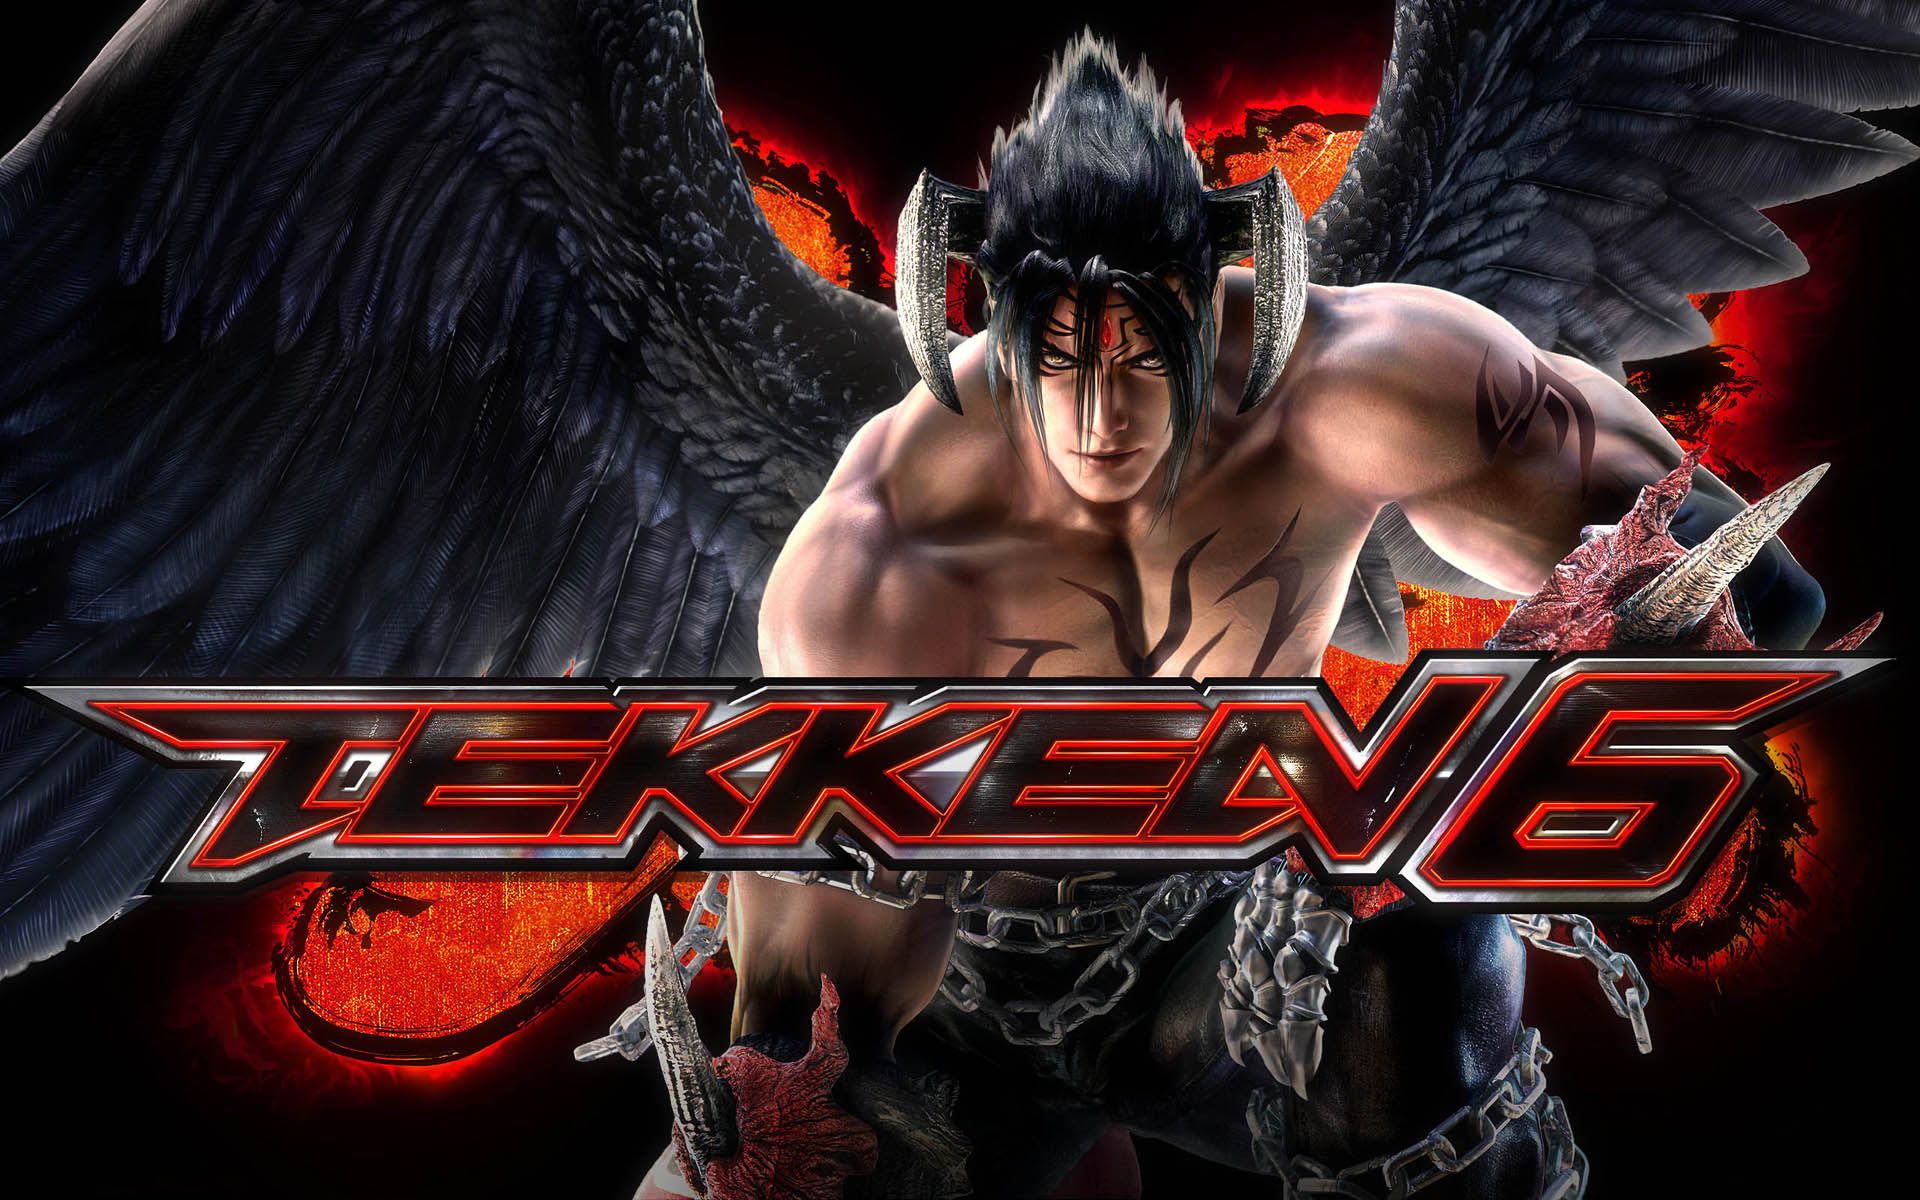 Devil Jin Tekken 6 Wallpapers HD Backgrounds